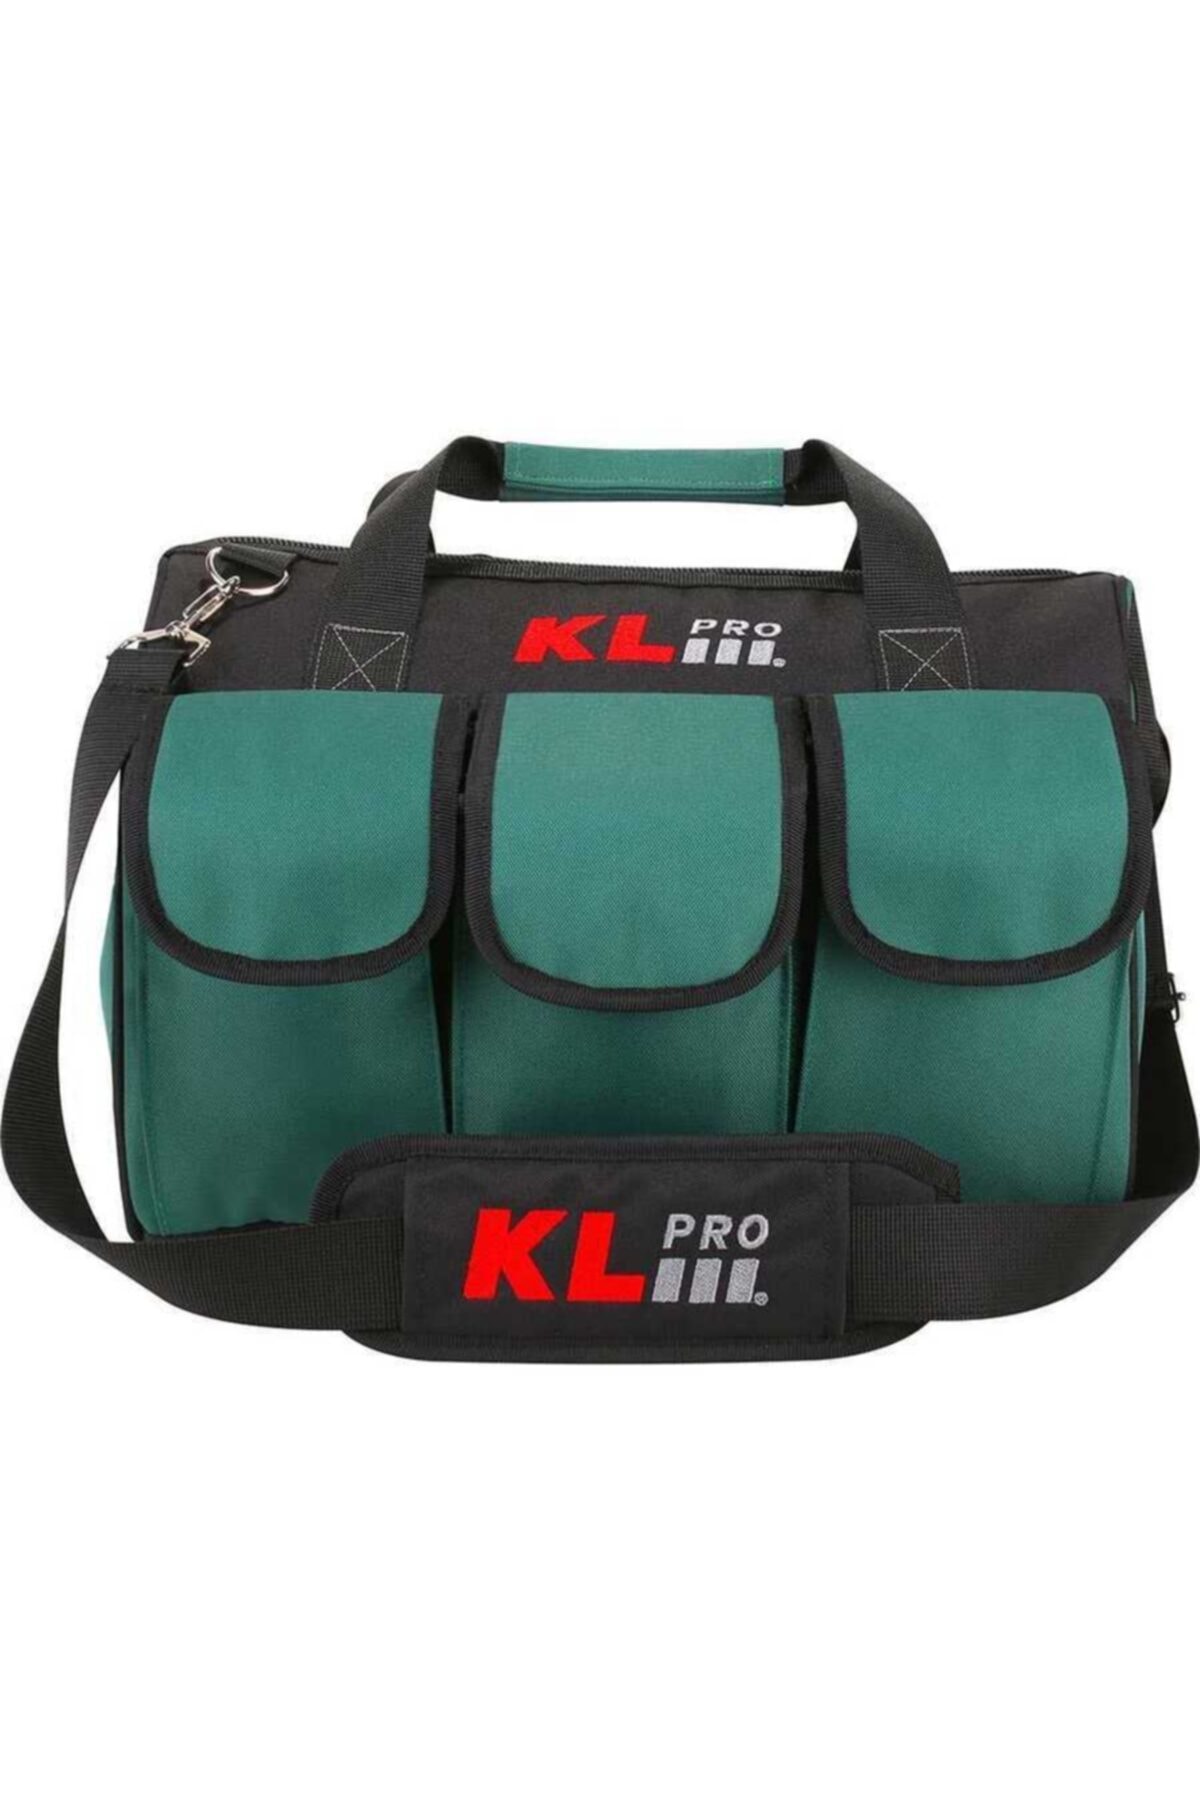 KLPRO Orta Boy Alet Taşıma çantası Kltct16 OH6777